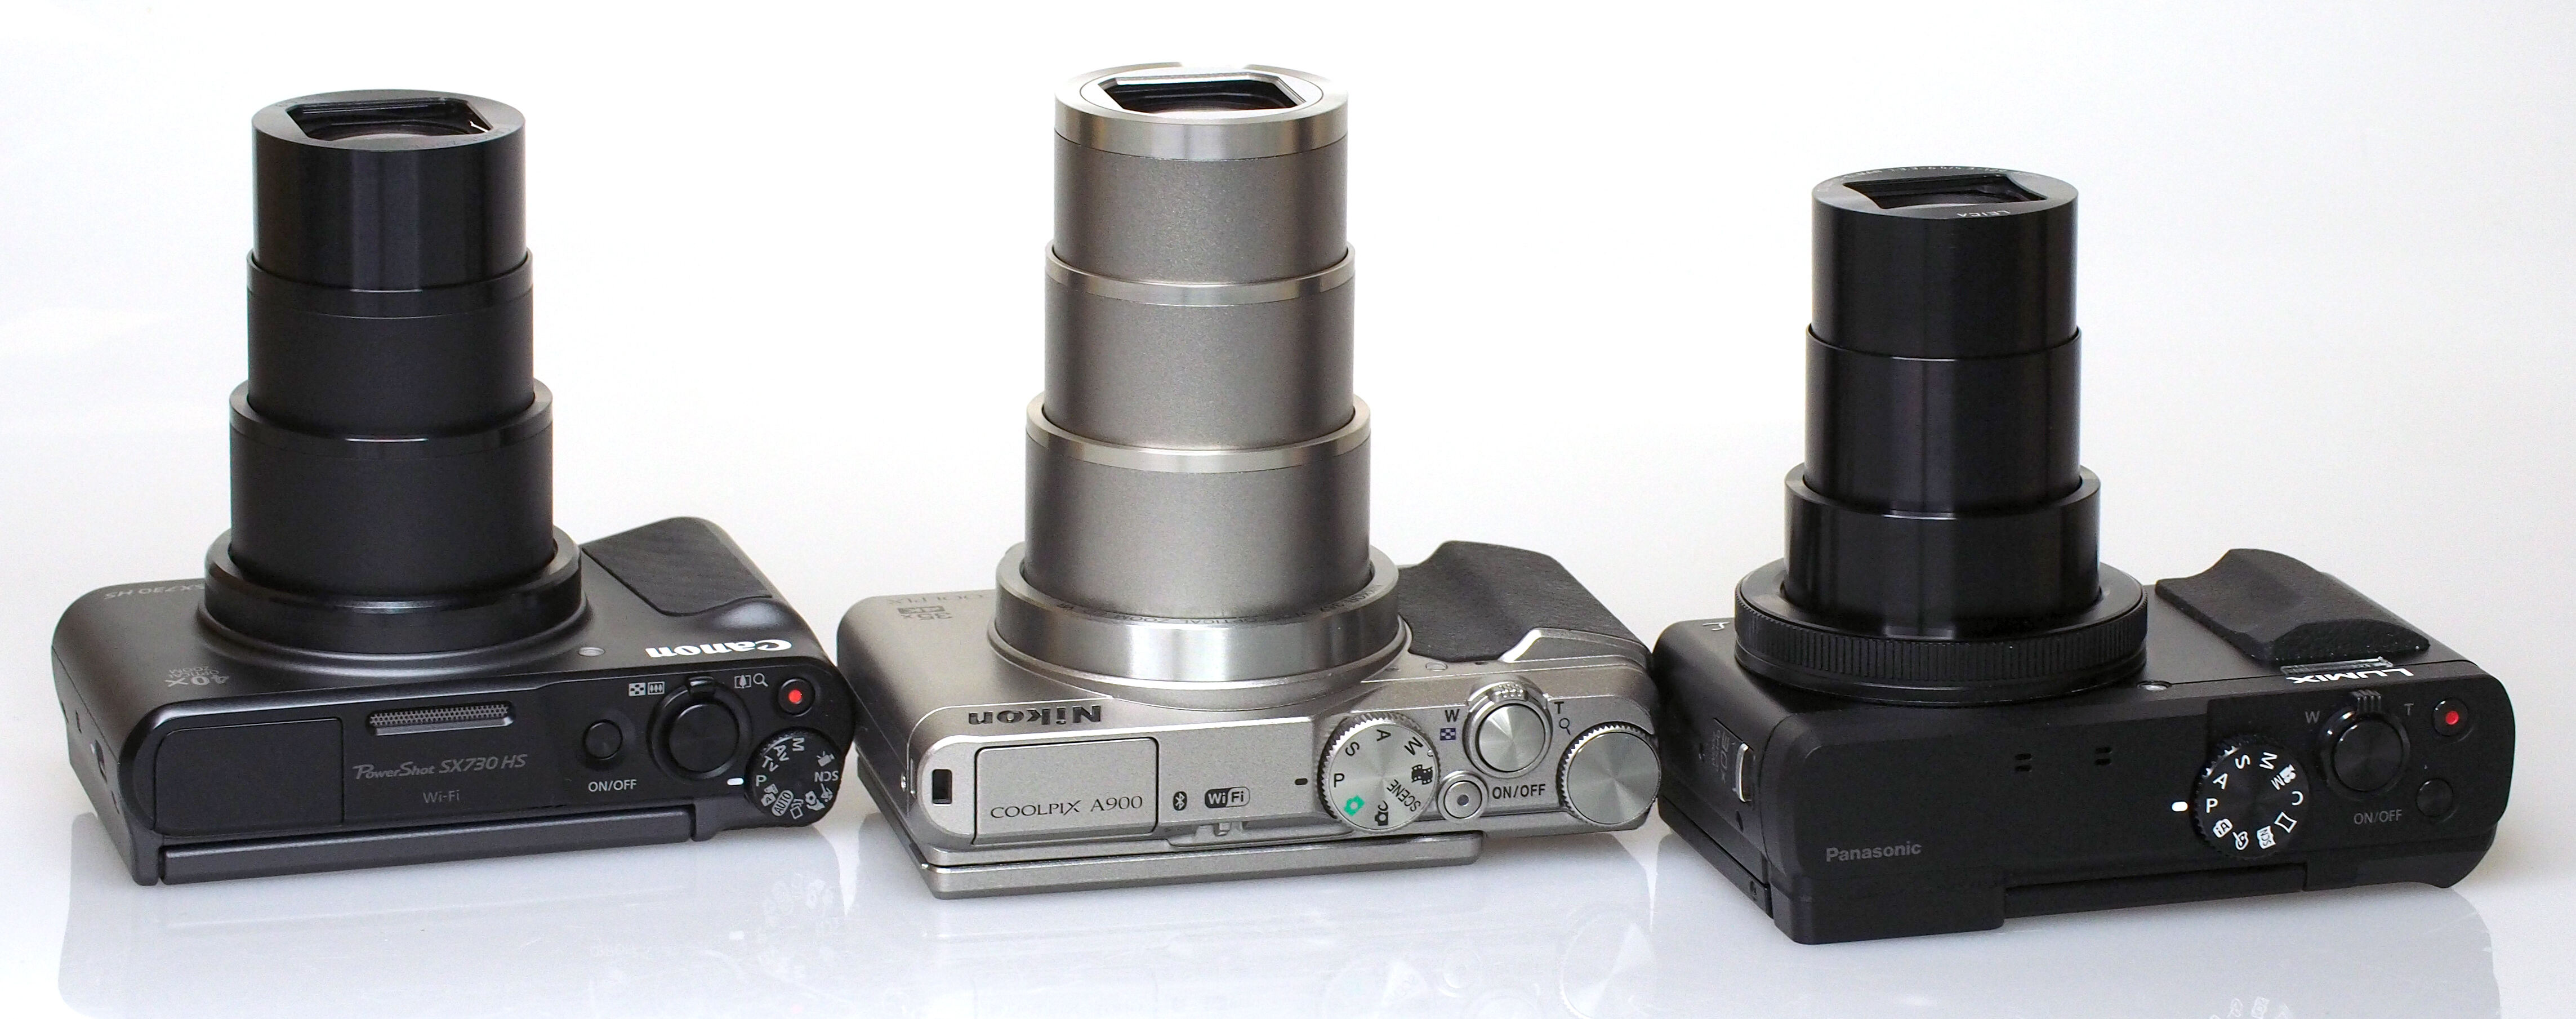 Canon Powershot SX730 HS Review